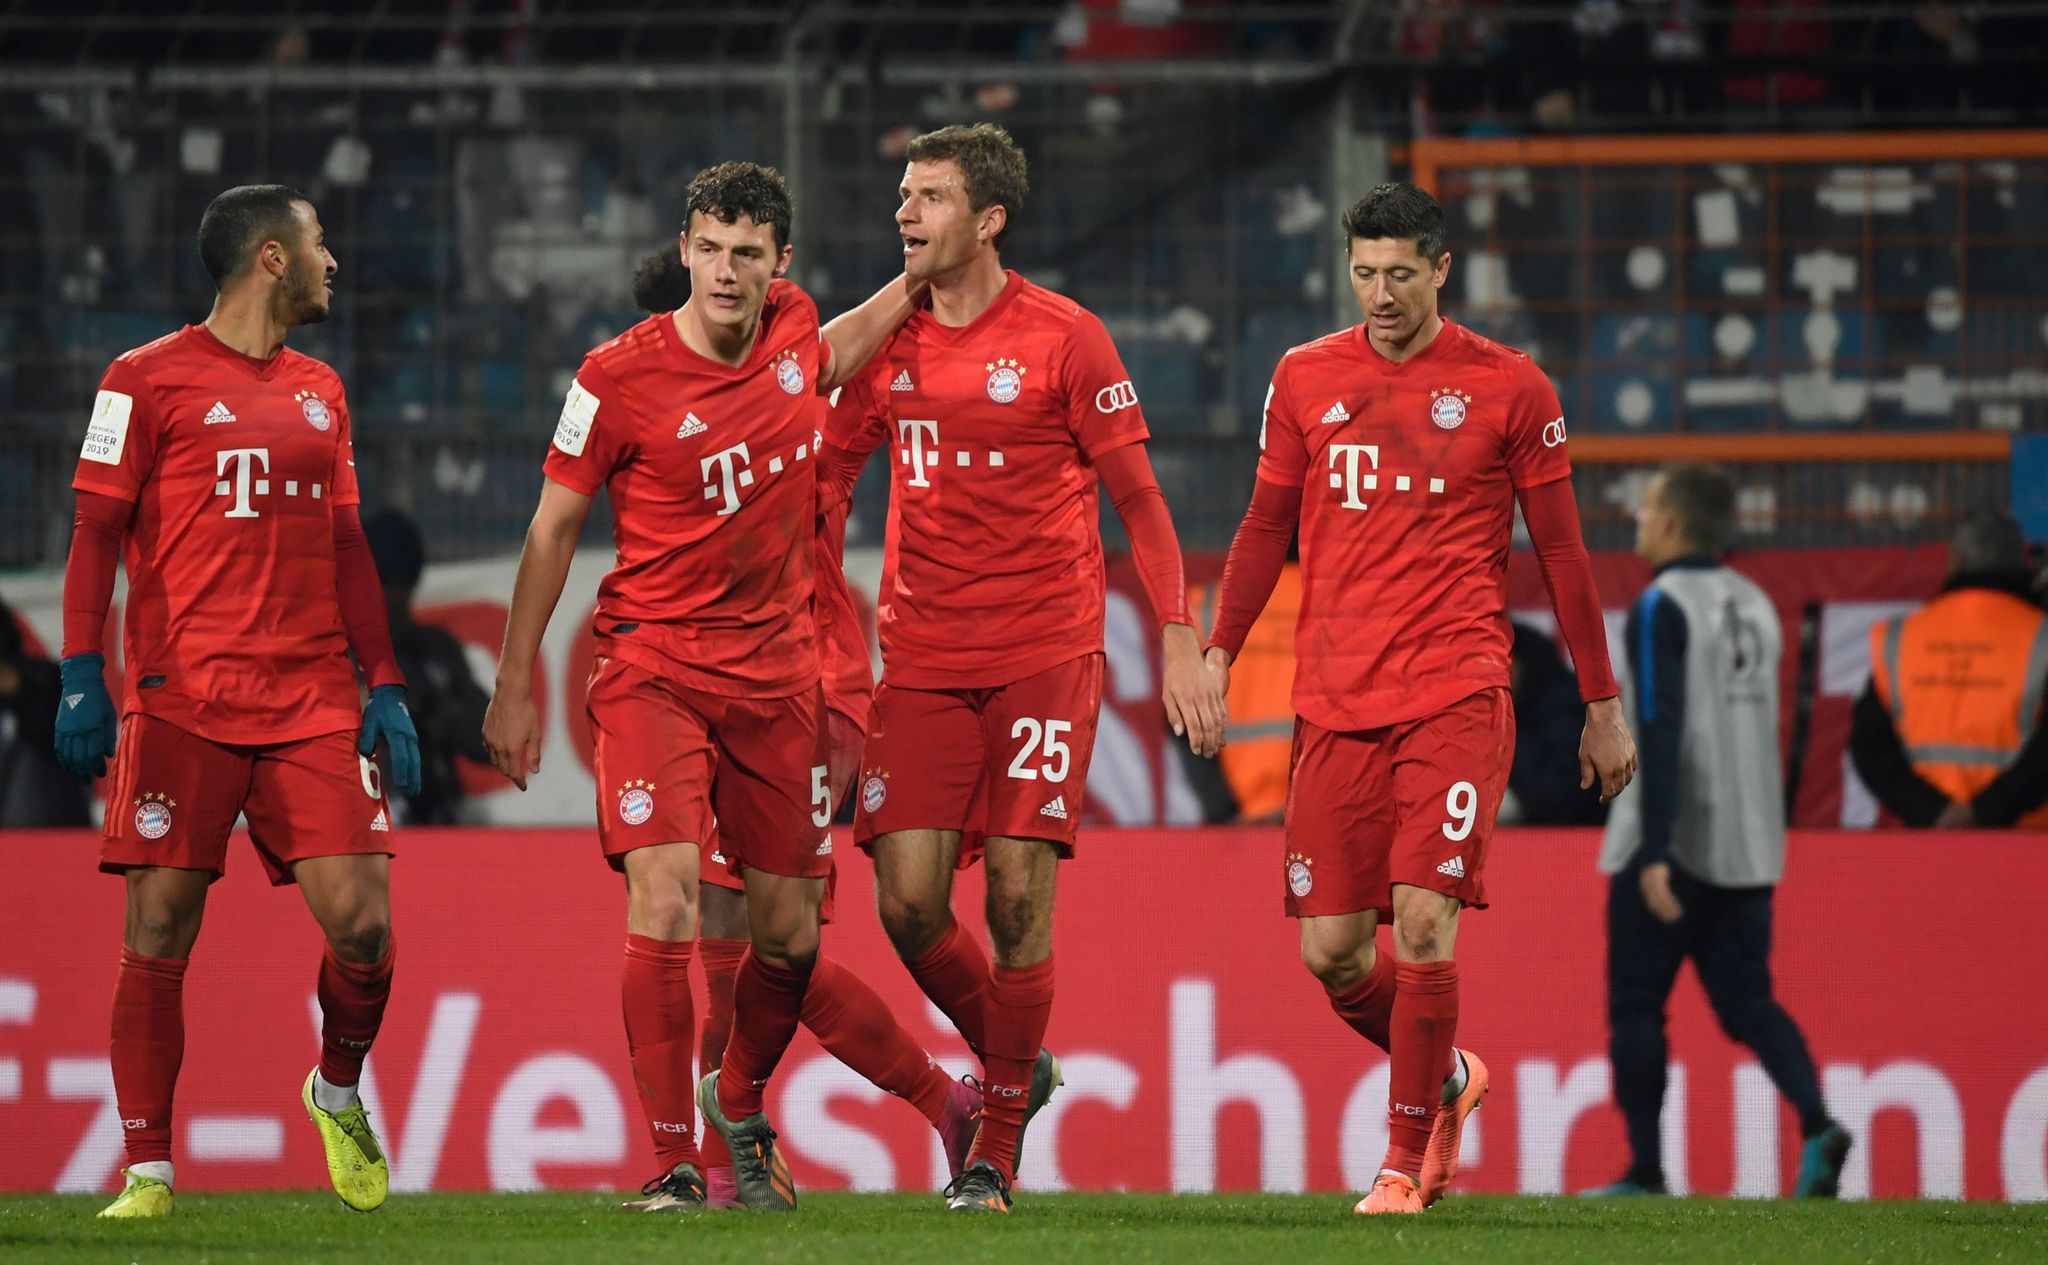 POKAL: Bayern sufre y hasta el último minuto descifra al Bochum